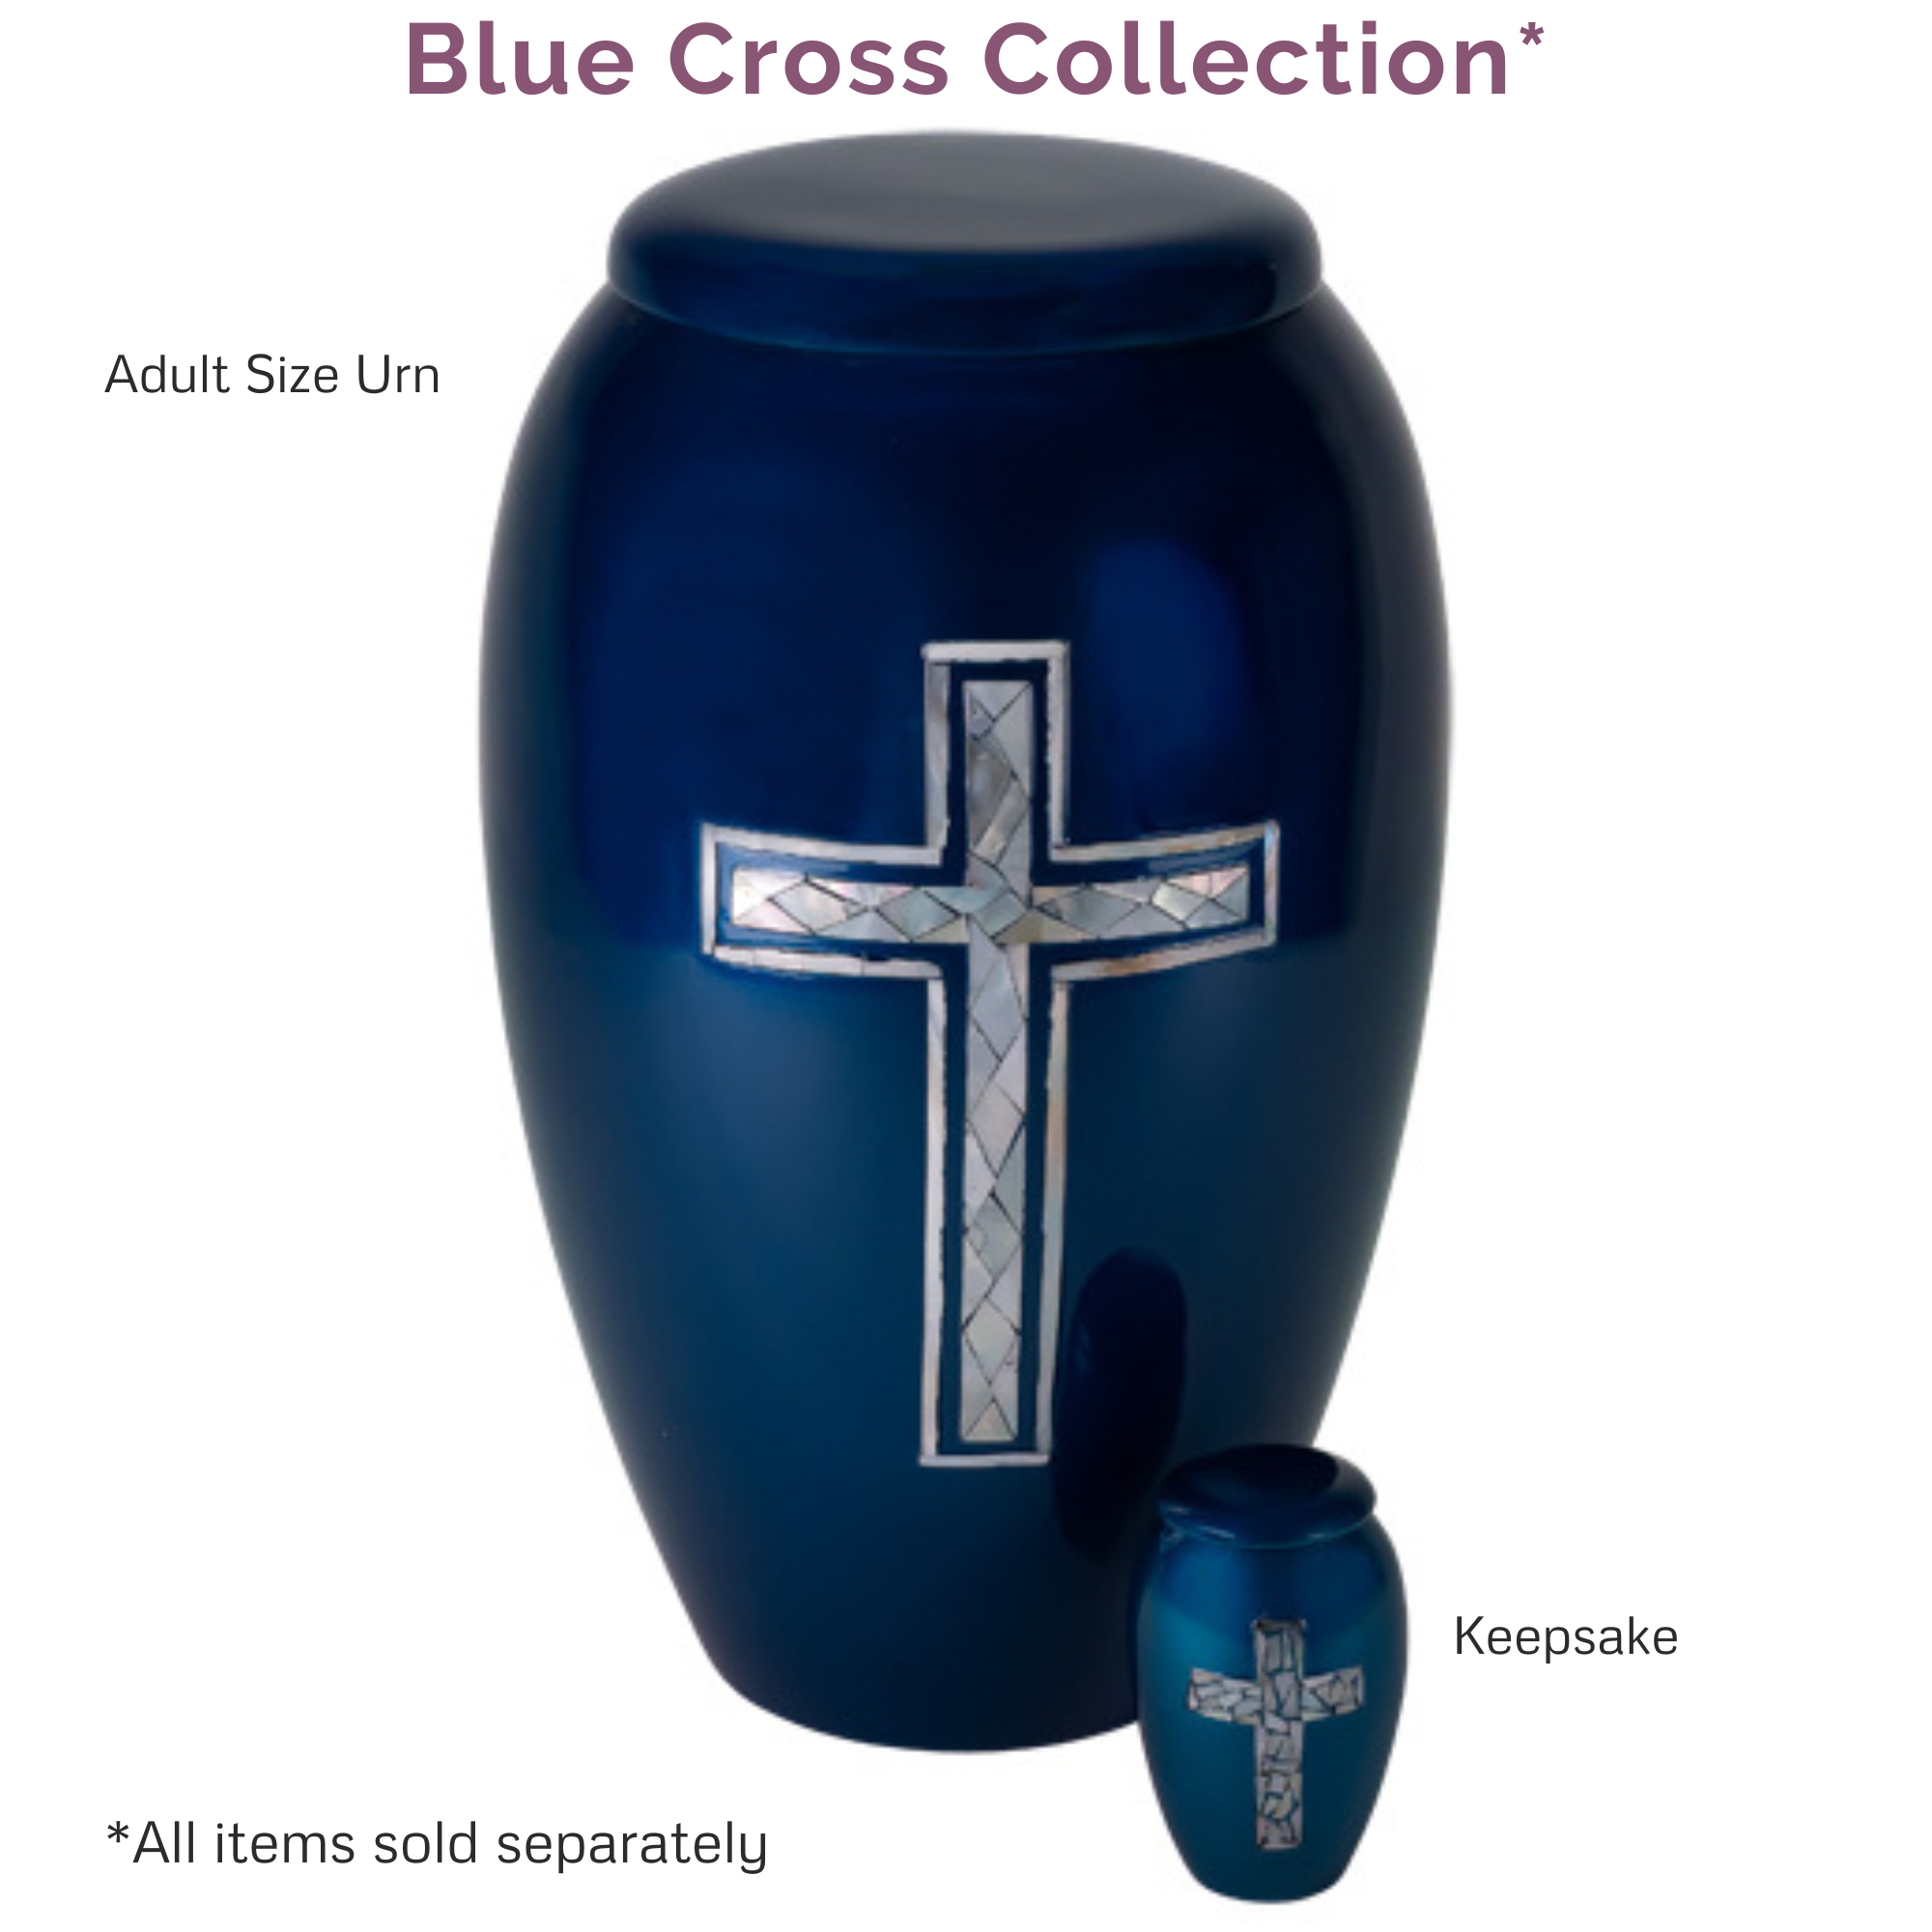 Blue Cross Keepsake Urn for Ashes